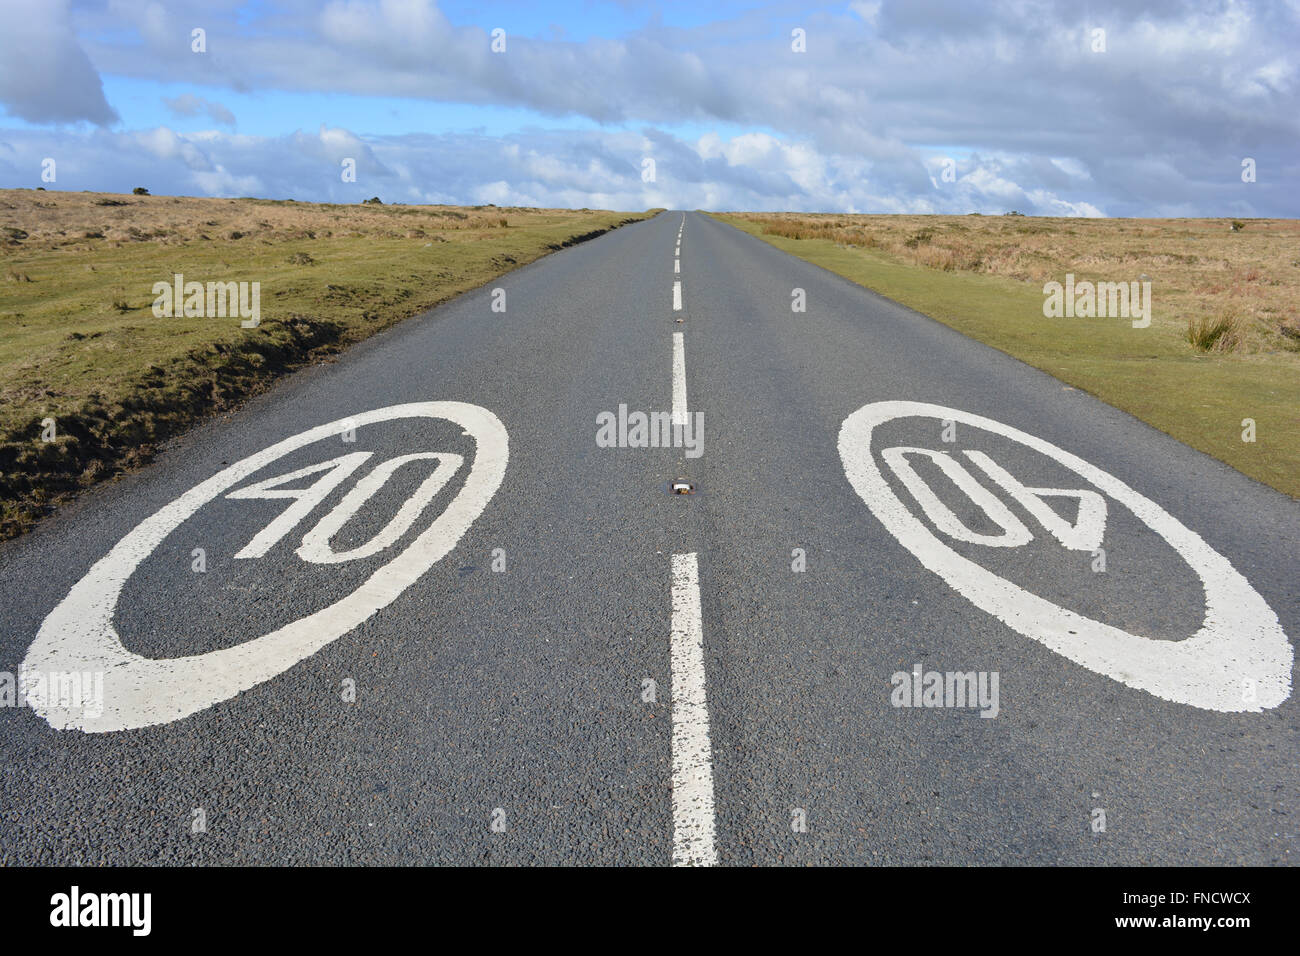 Straße markiert mit weiß lackierten 40 km/h Geschwindigkeitsbeschränkung, Schweinefleisch Hill, Dartmoor National Park, Devon, England Stockfoto